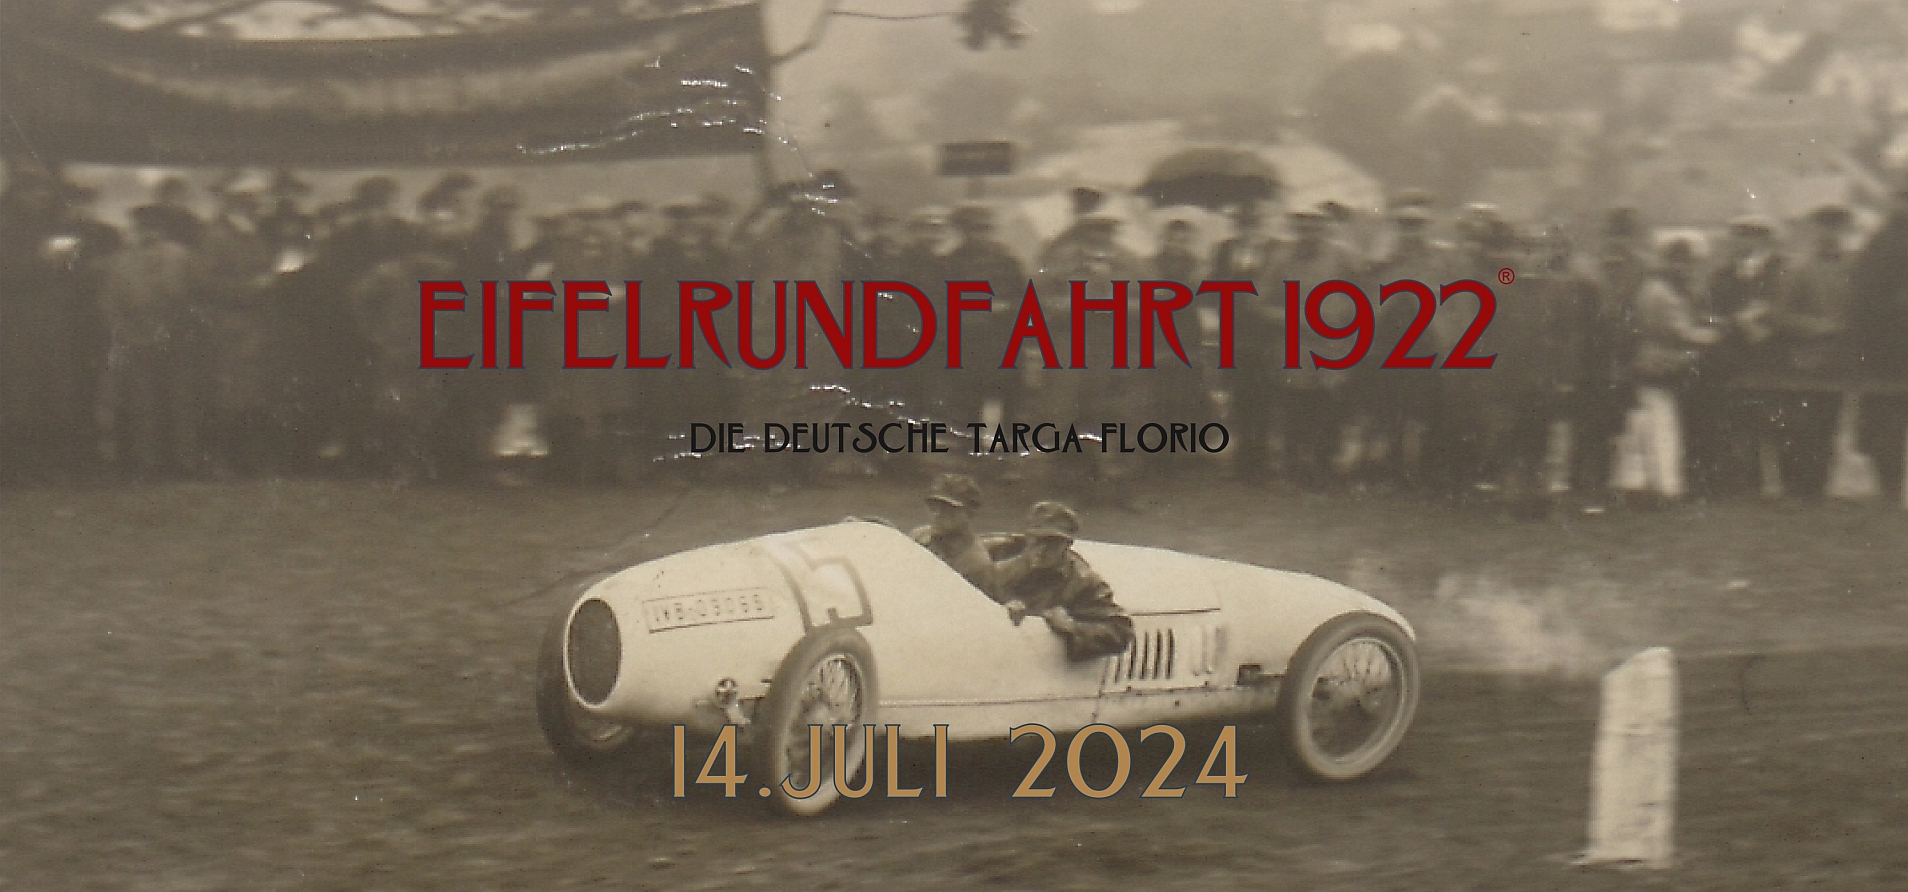 (c) Eifelrundfahrt1922.de